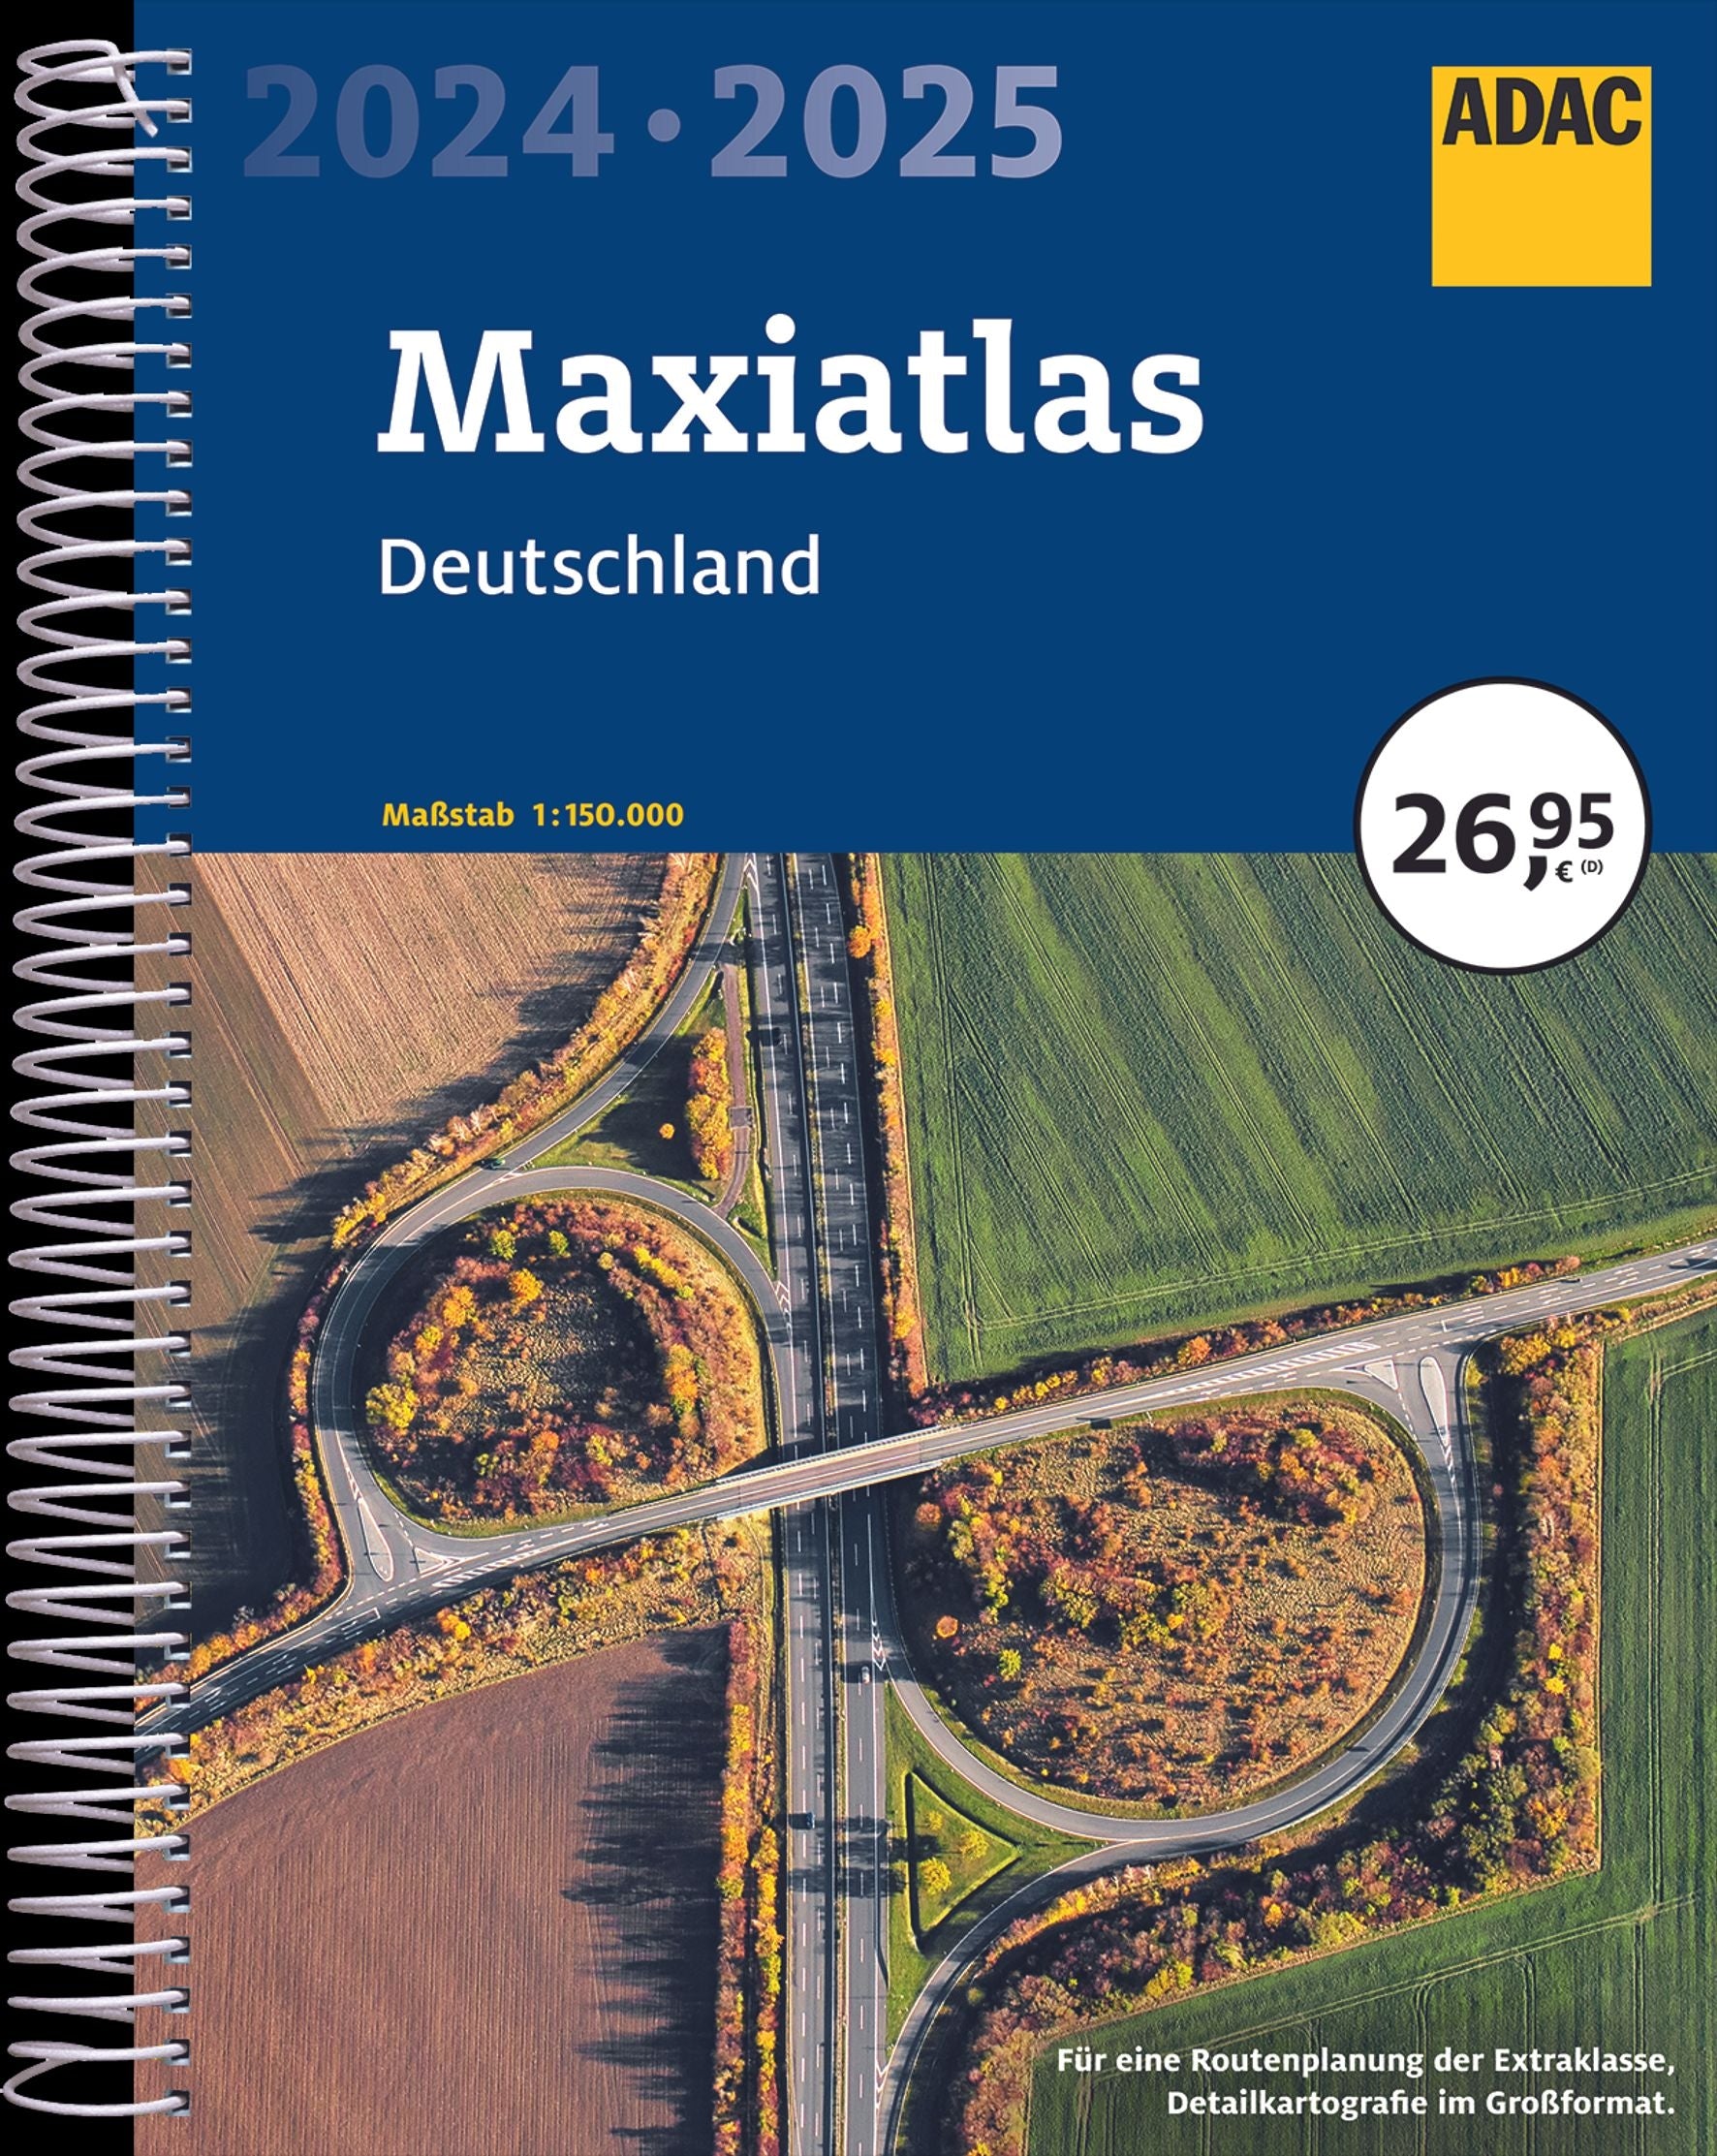 ADAC Maxiatlas 2024/2025 Deutschland 1:150 000